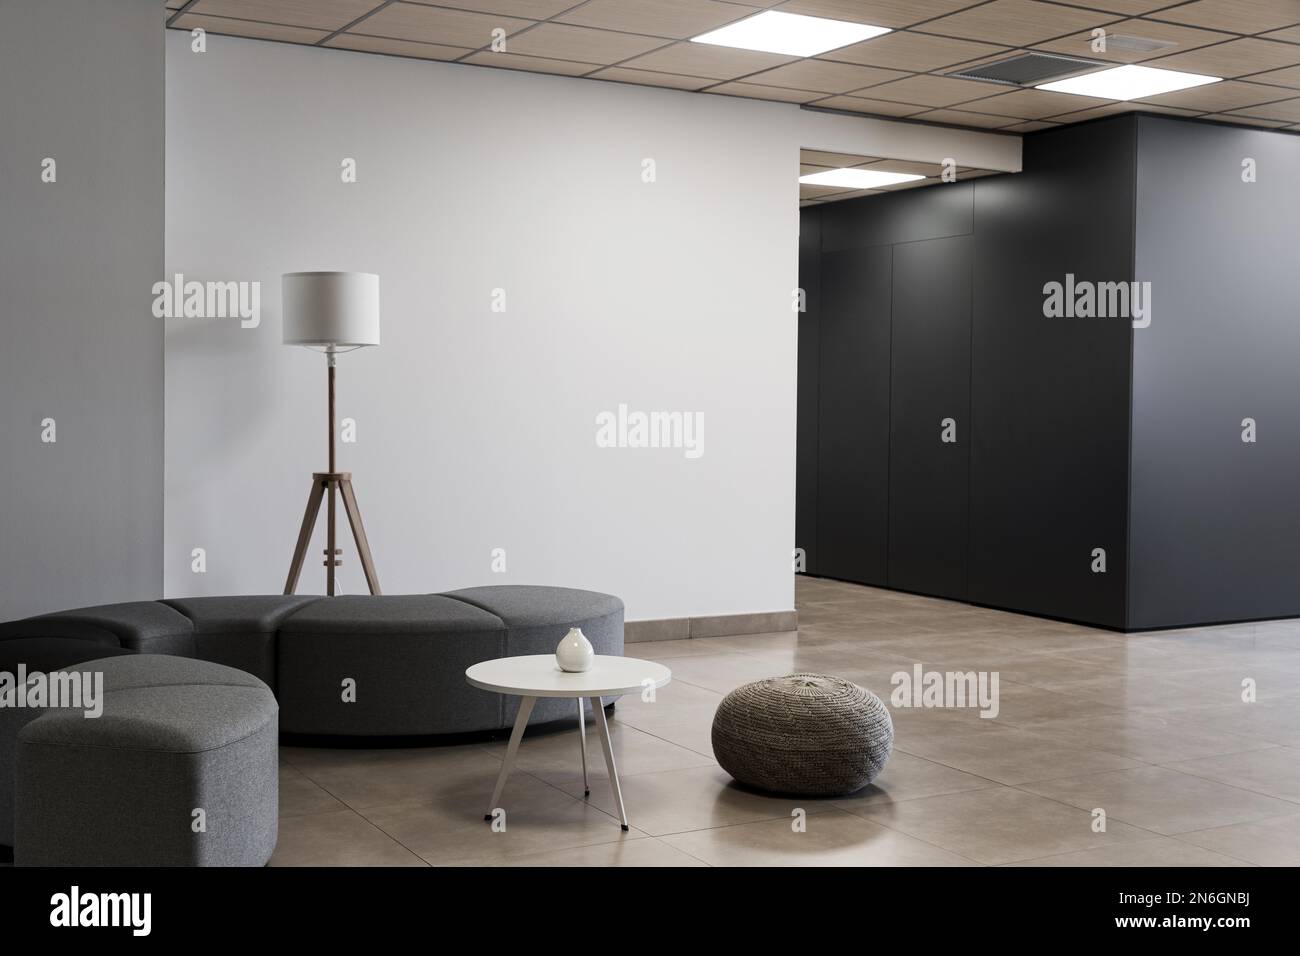 chambre vide minimaliste dans un bâtiment d'affaires. Résolution et superbe photo de haute qualité Banque D'Images